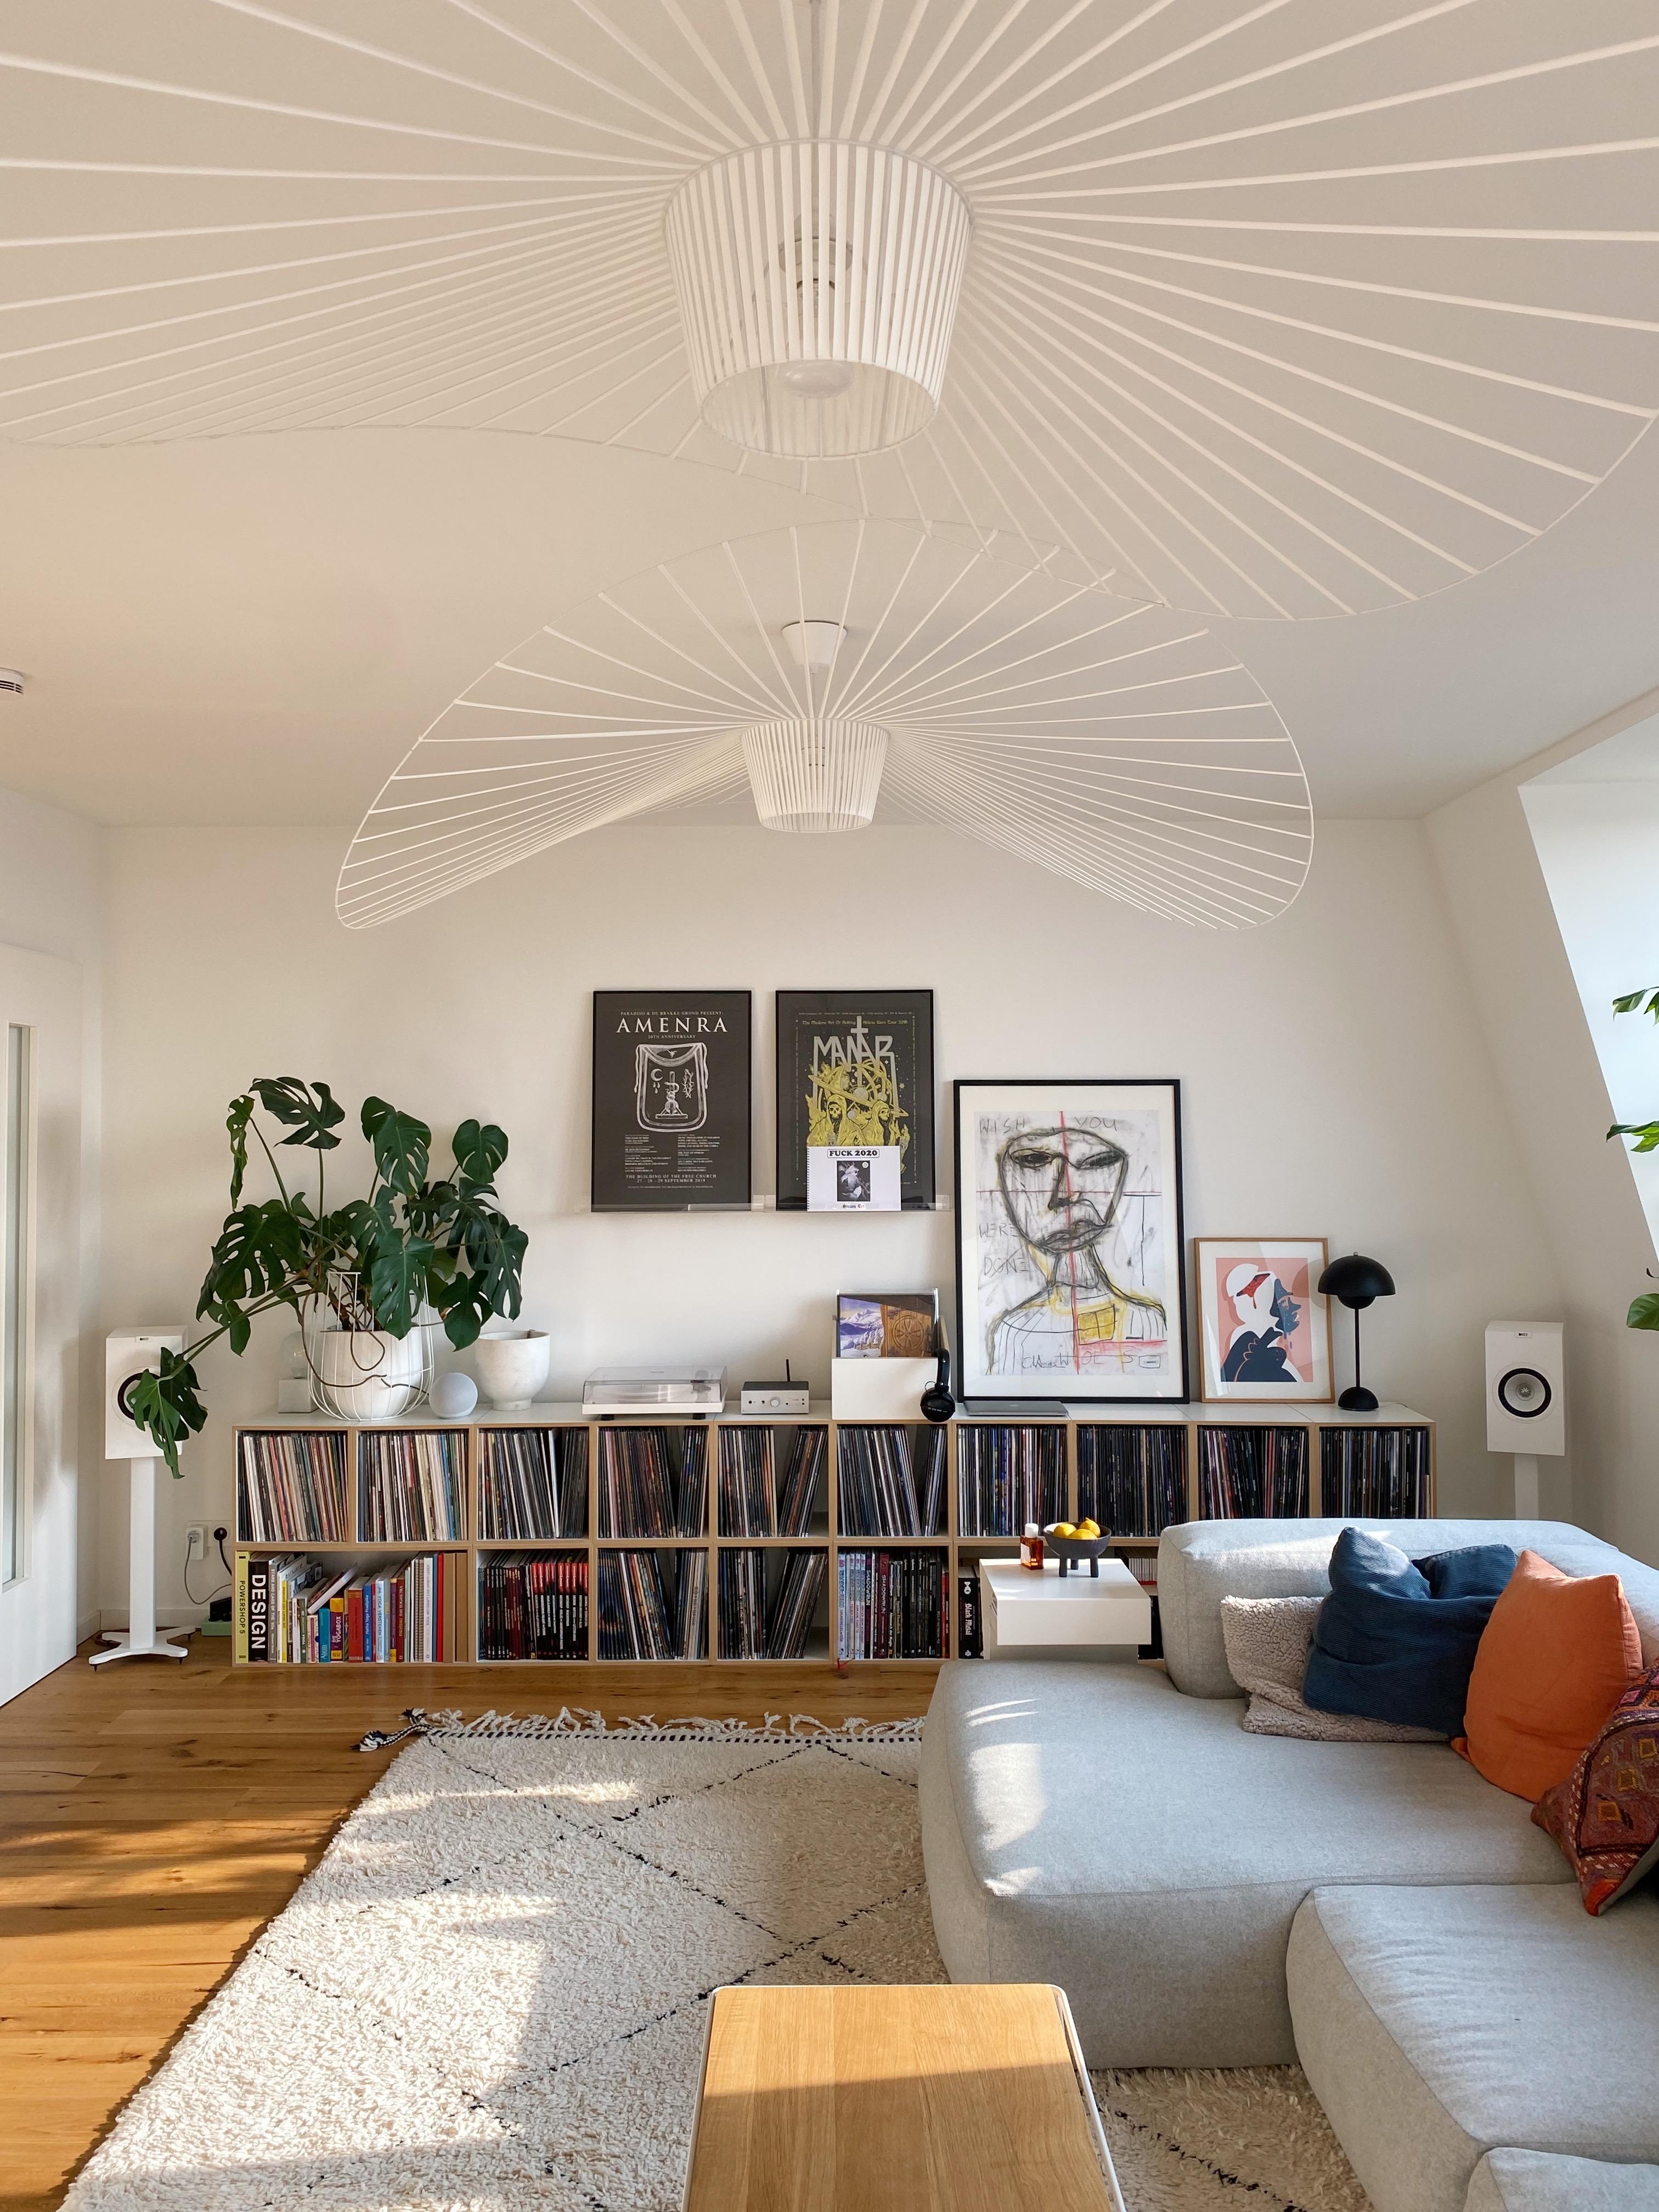 Let the sun in ☀️ 
#Home #Couchliebt #wohnzimmer #Livingroom #Livingroominspo #Plattensammlung #Kunst #Lampeninspo 